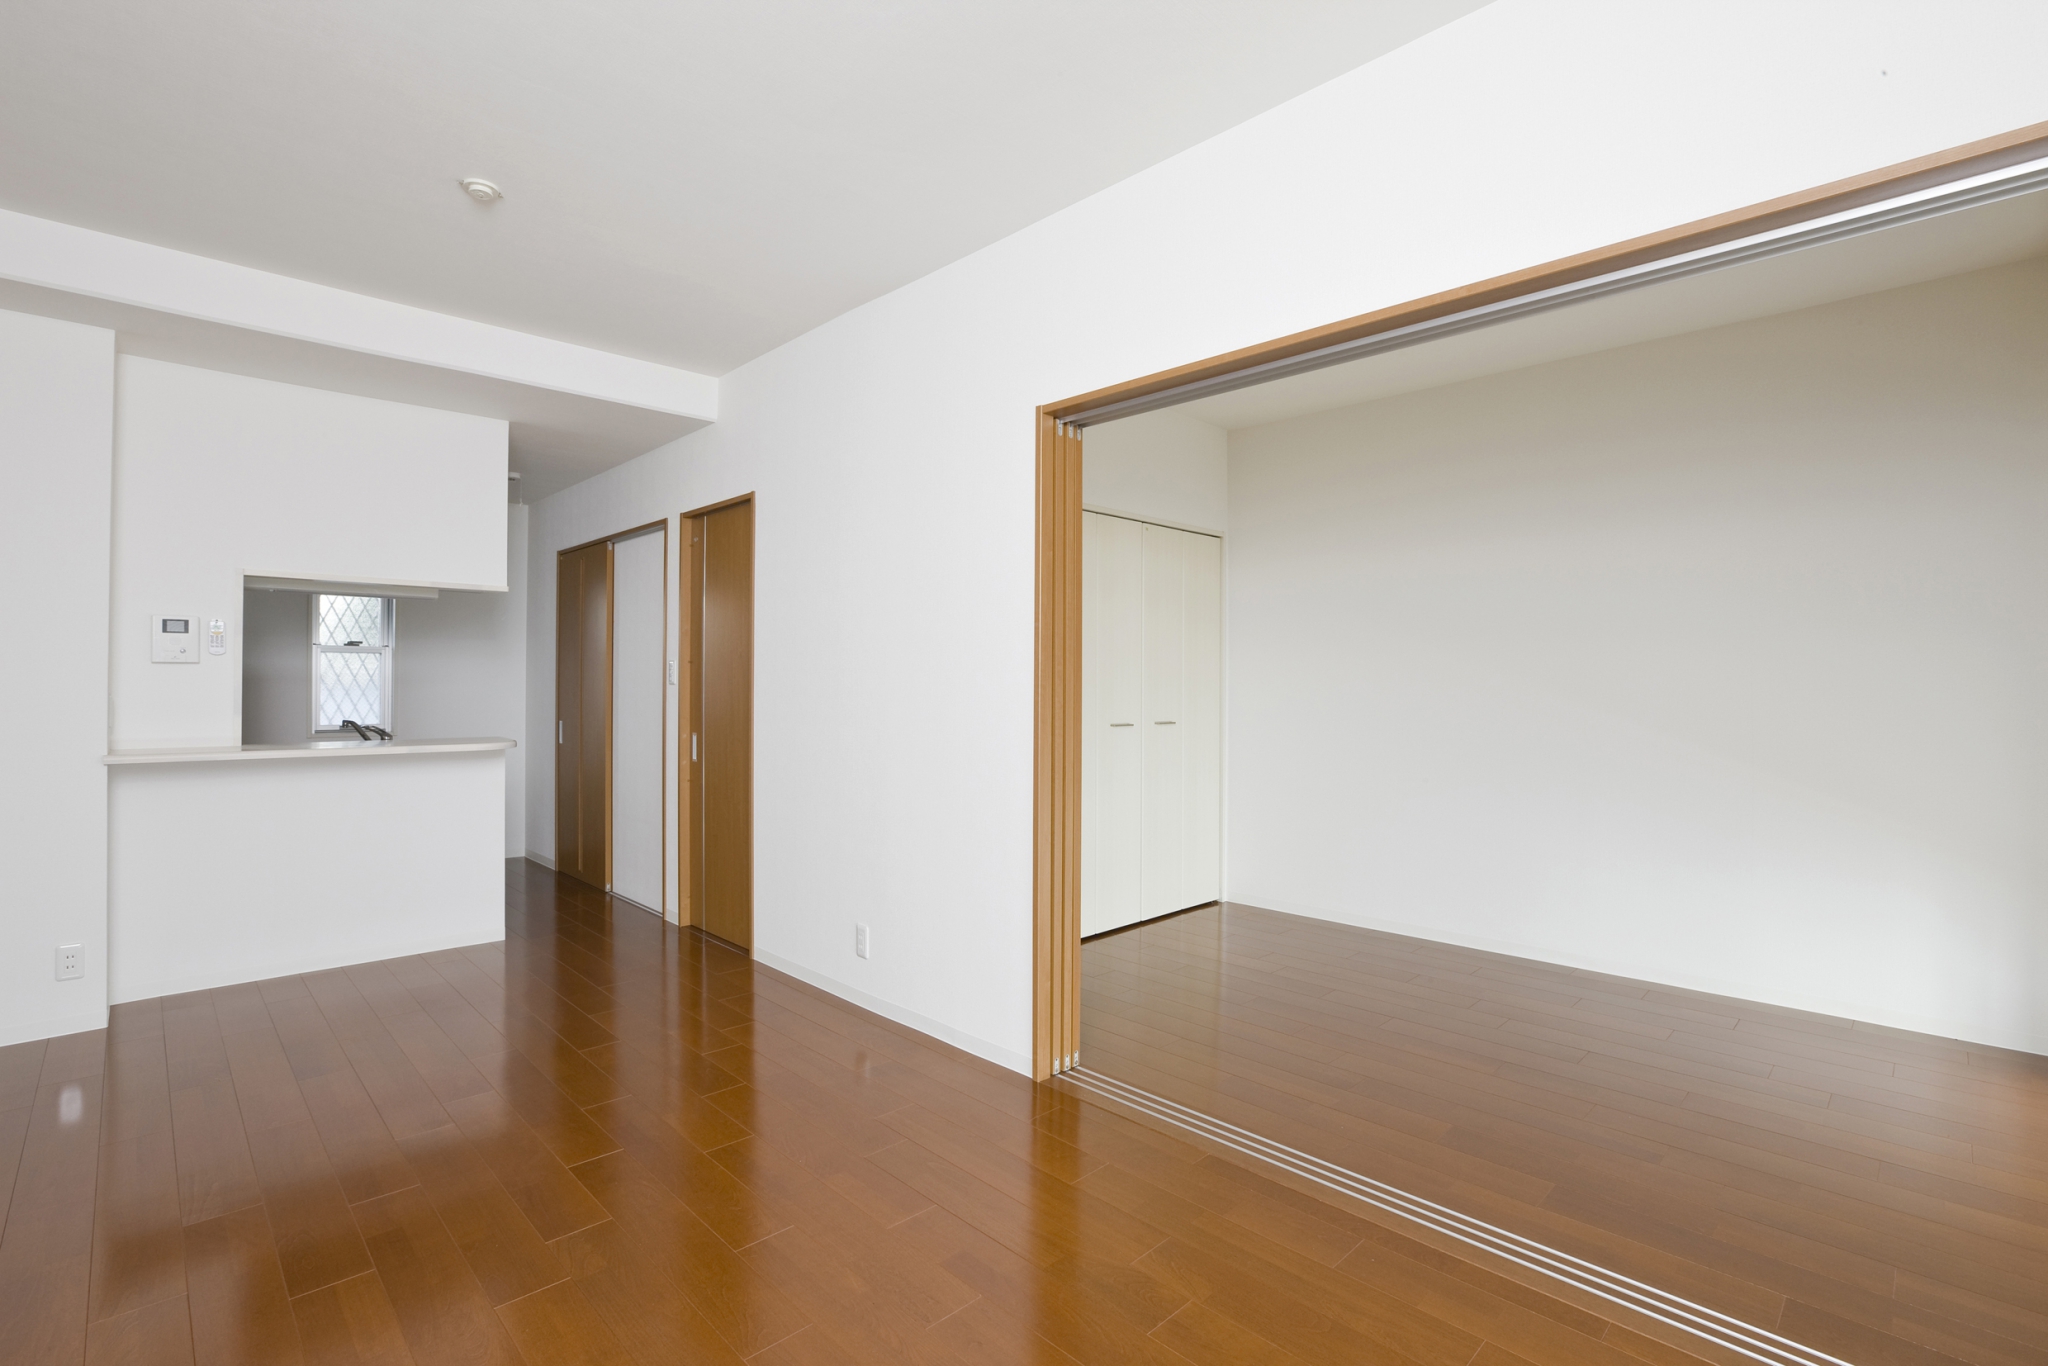 名古屋市天白区の2階建て賃貸マンションのフローリングとドアの色を揃えたLDK+洋室